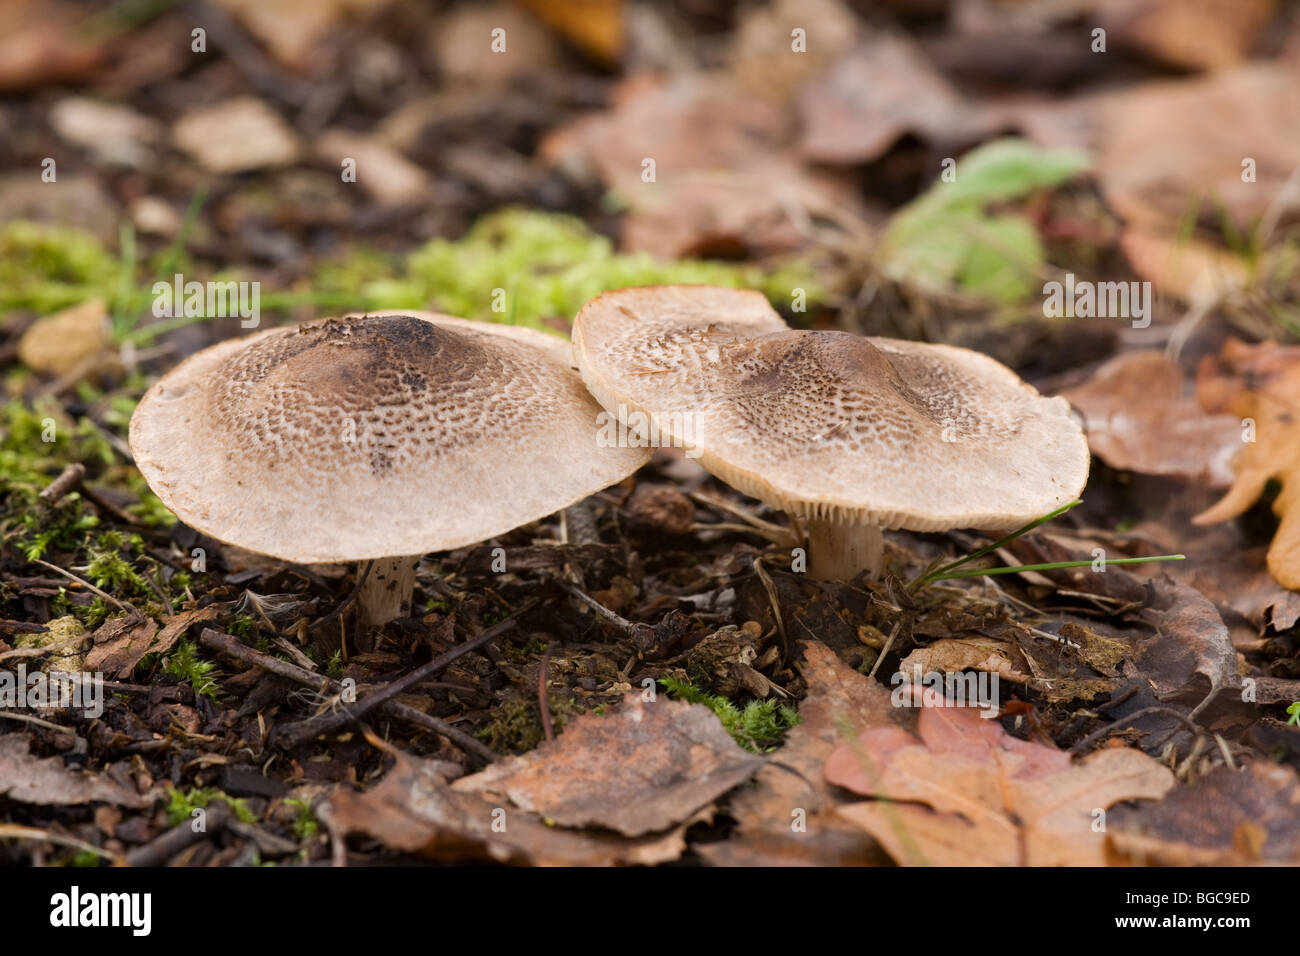 Greranium Web-cap Cortinarius paleaceus fungi fruiting bodies growing in leaf litter Stock Photo